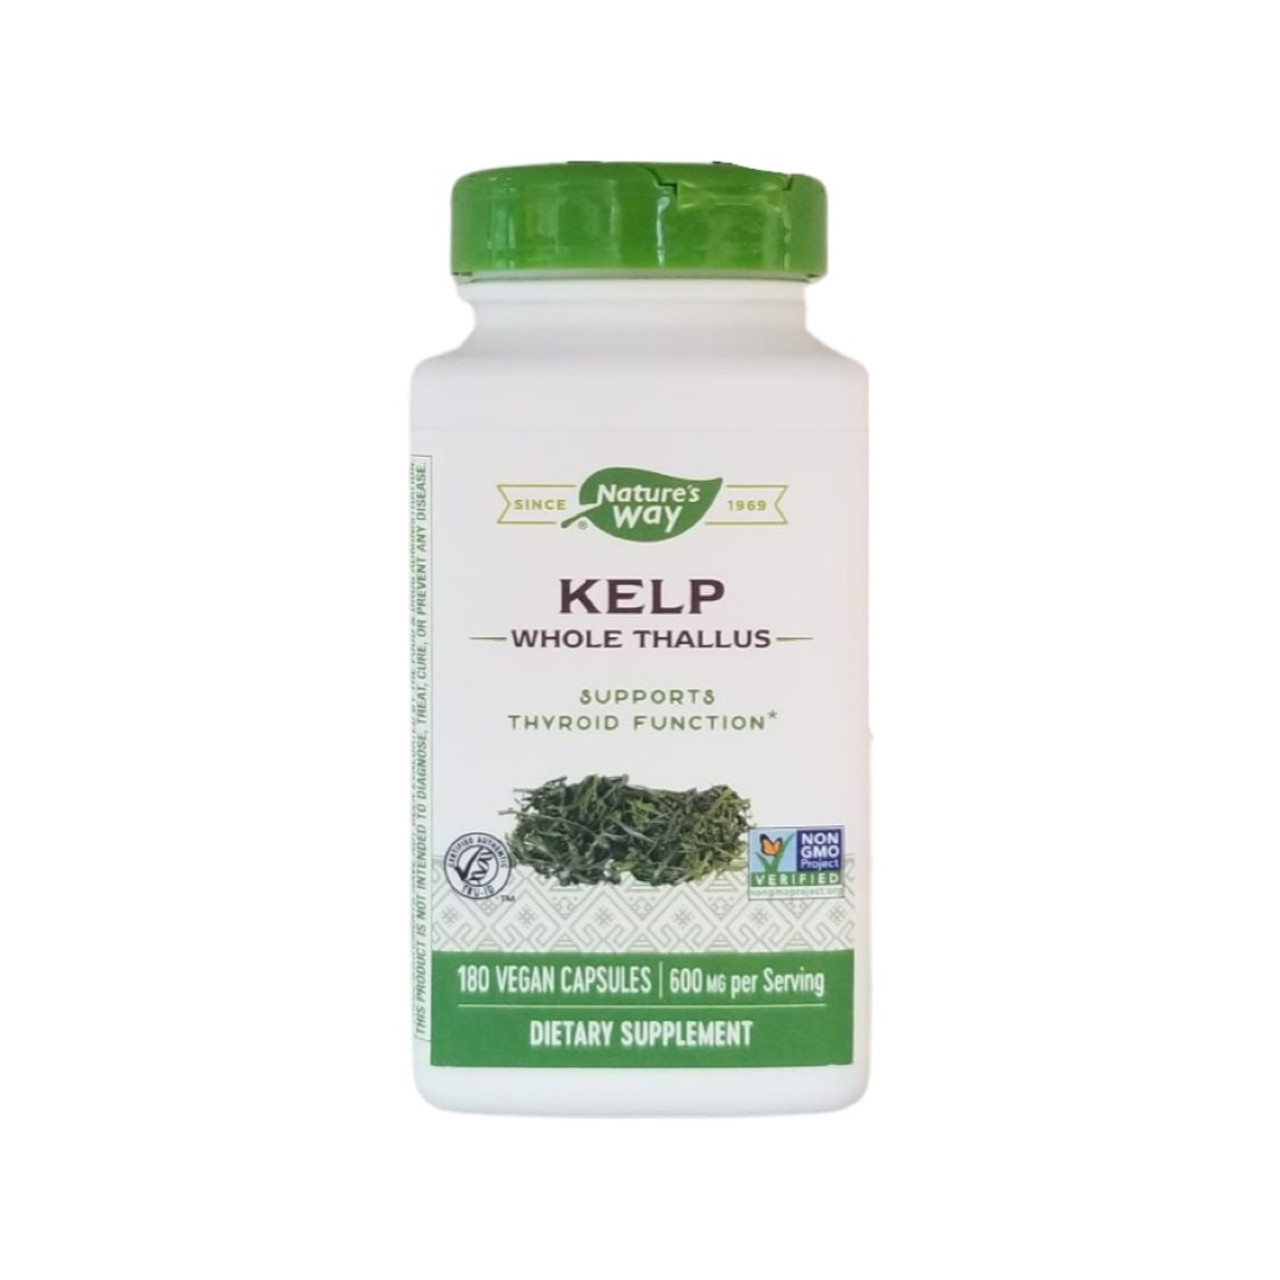 Nature's Way Kelp - 180 vegan capsules